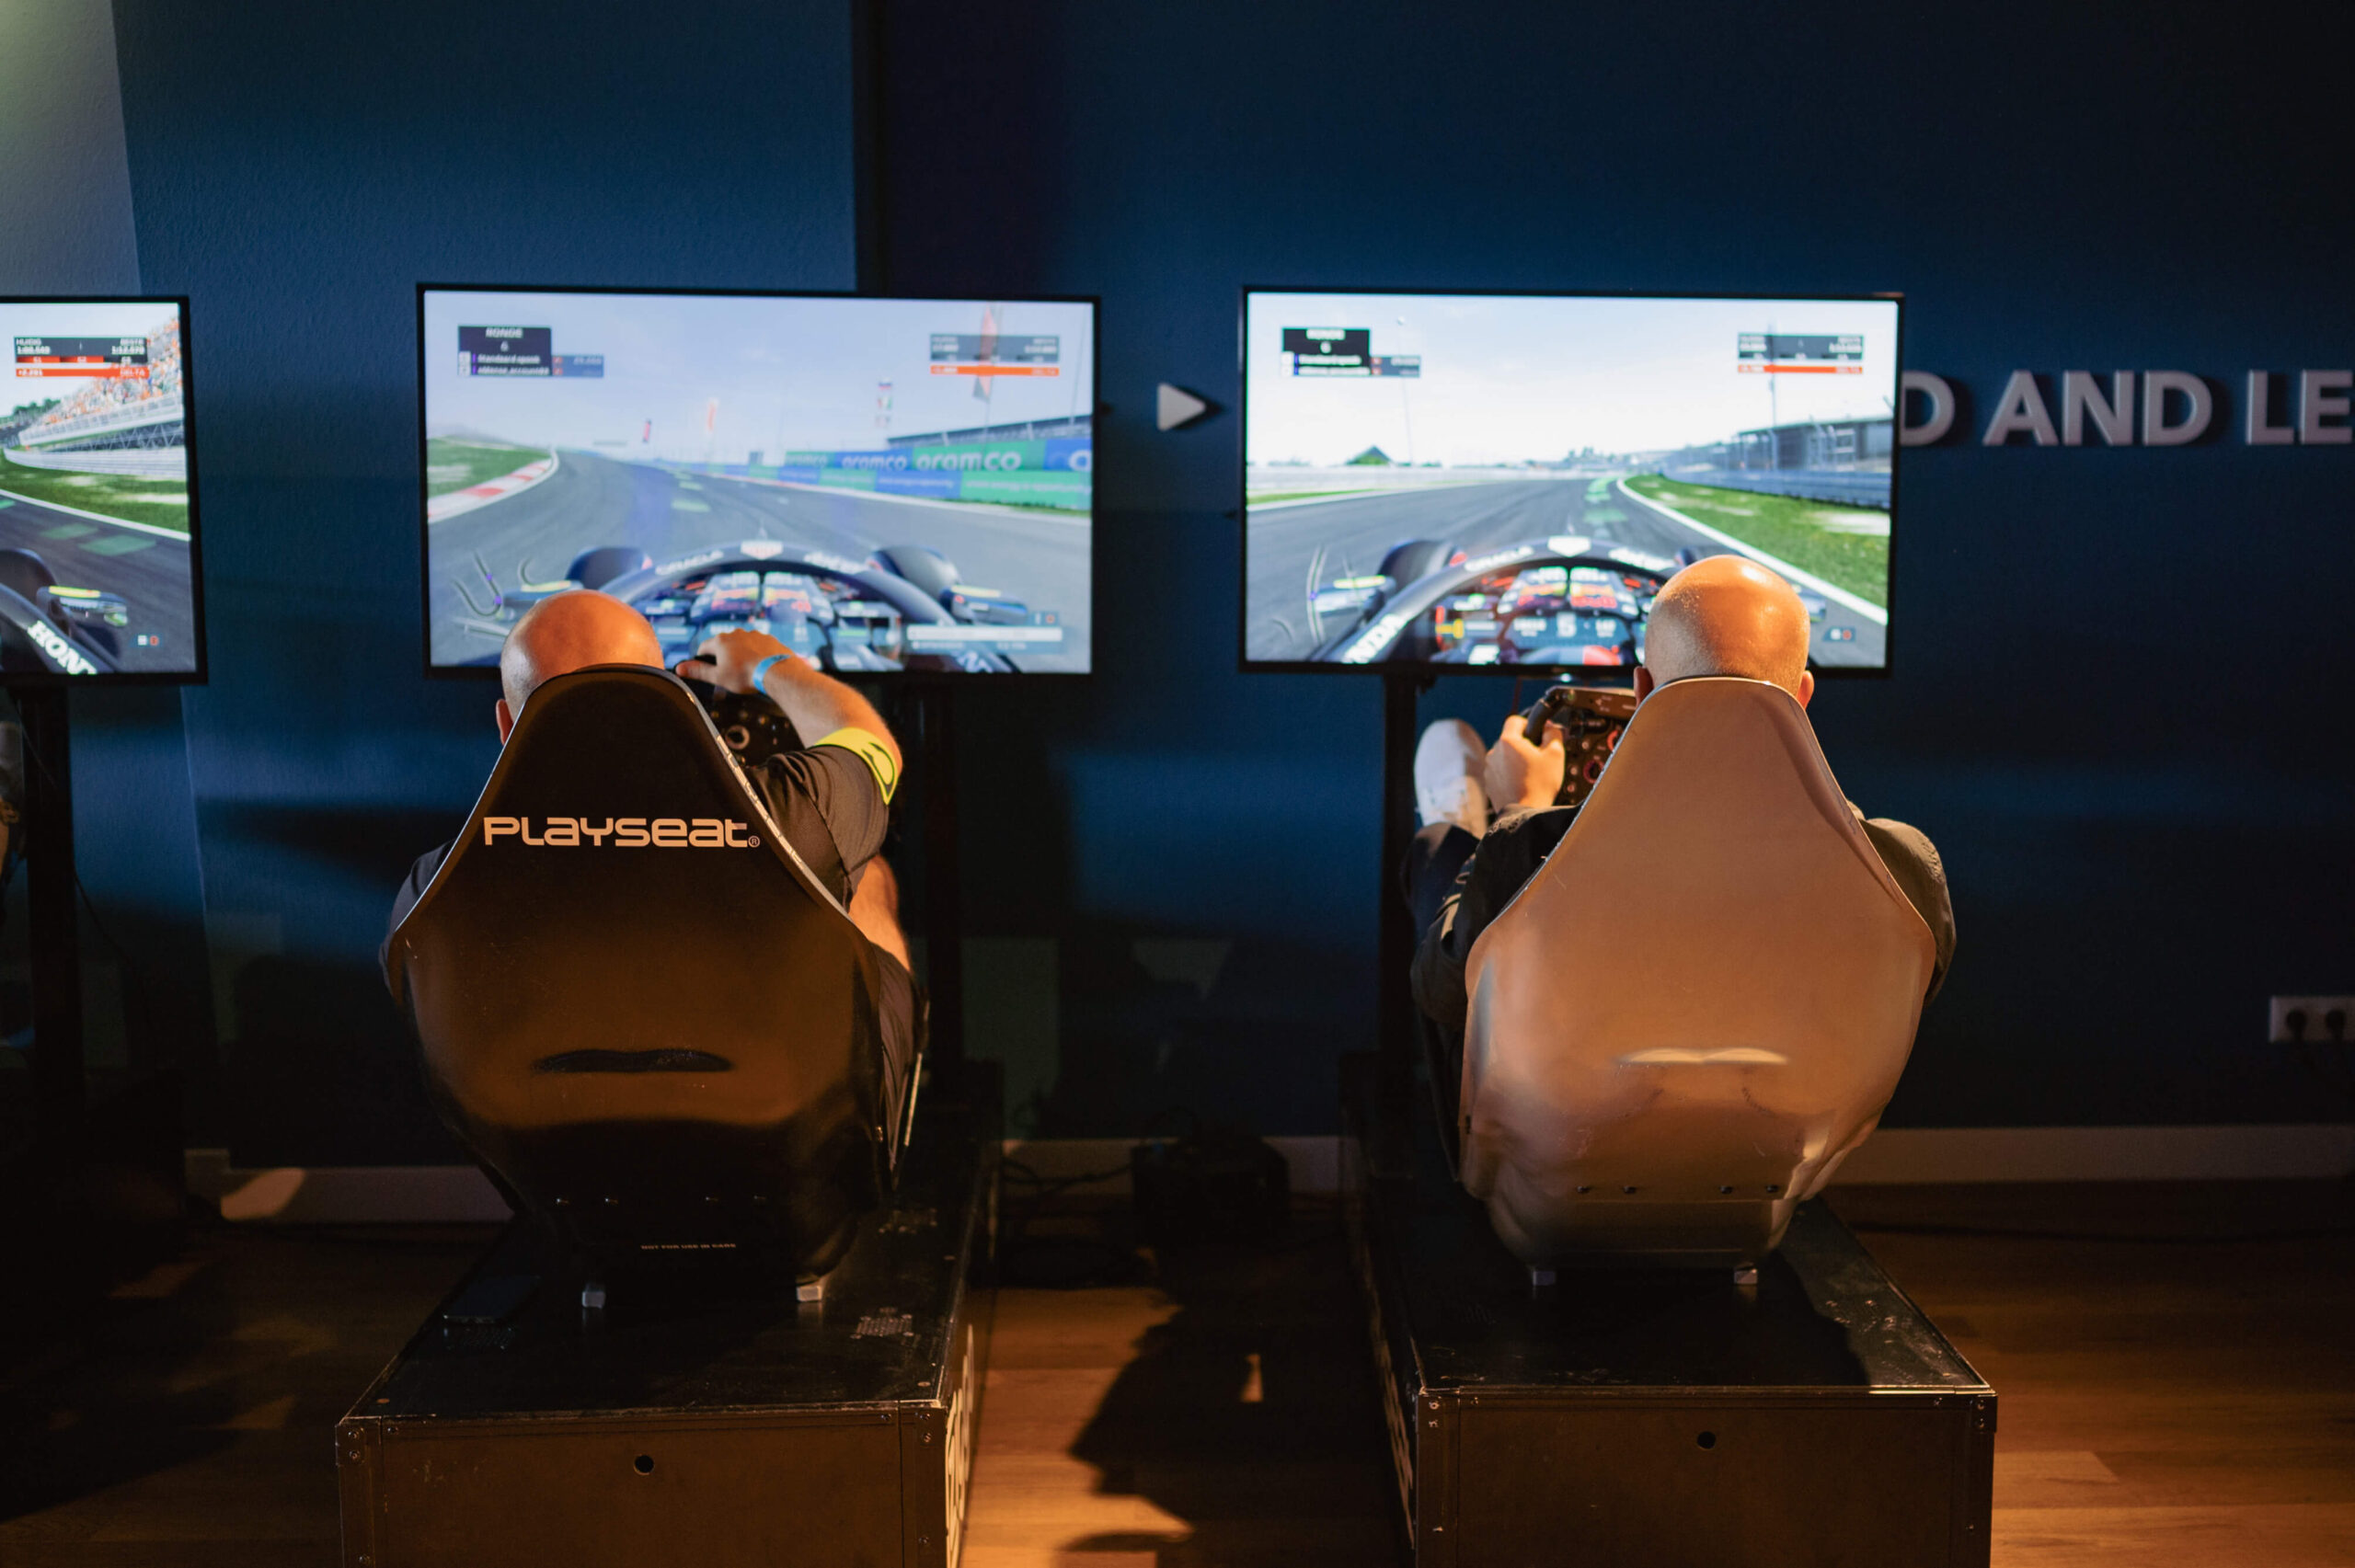 Twee mannen aan het racen op F1 simulatoren tijdens F1 uitgebreid event